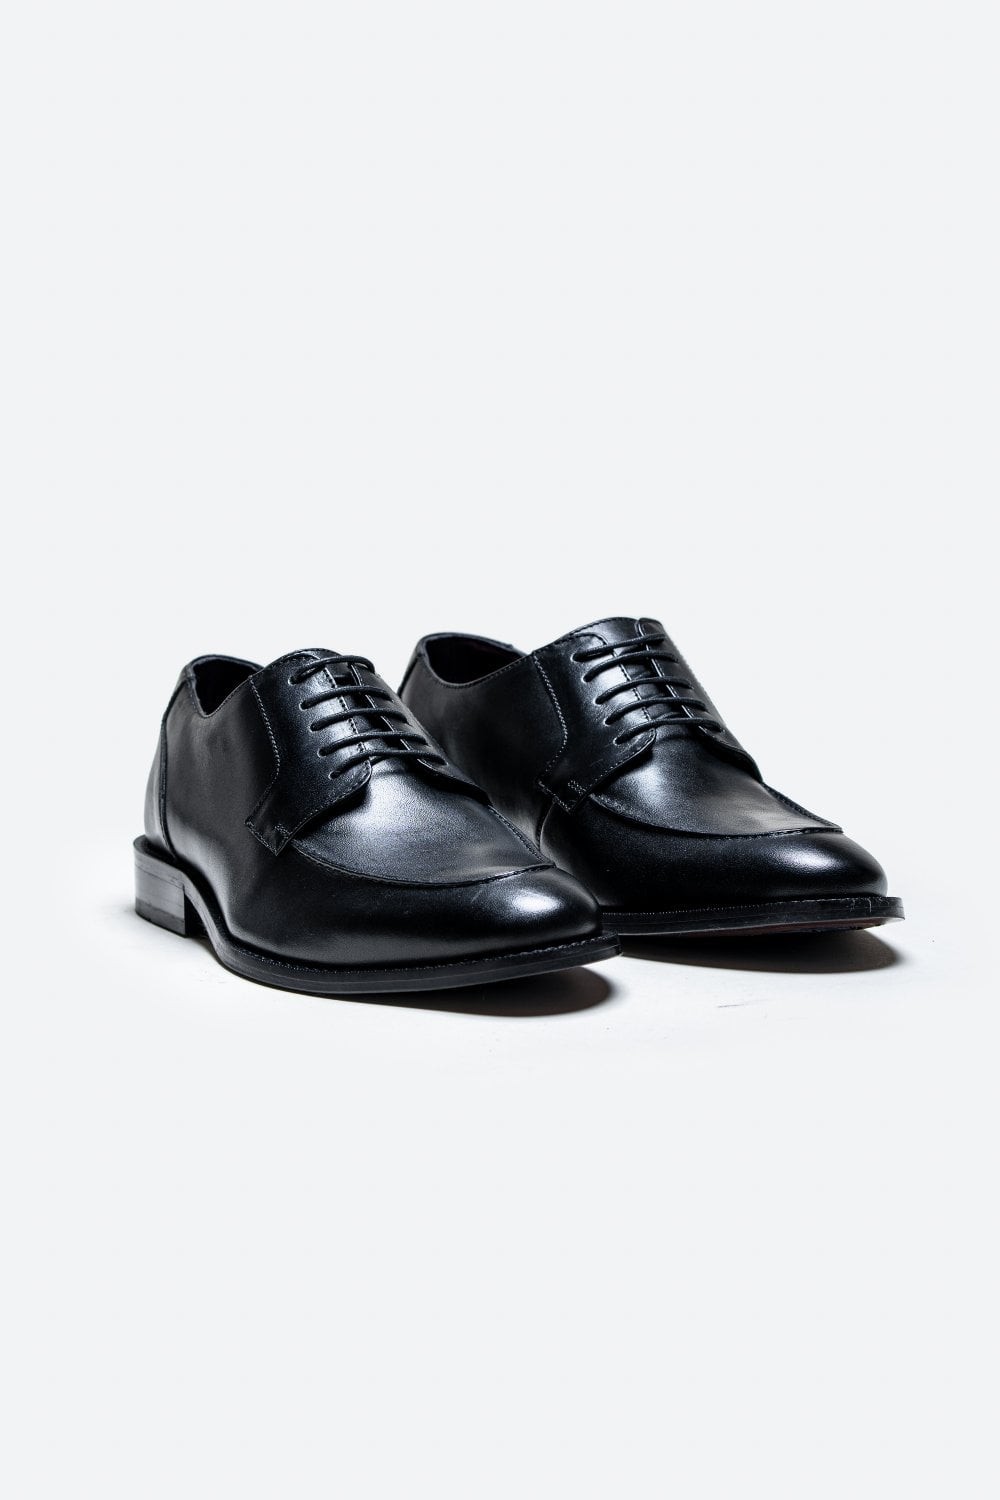 Chaussures formelles à lacets Derby pour hommes - BERLIN - Noir